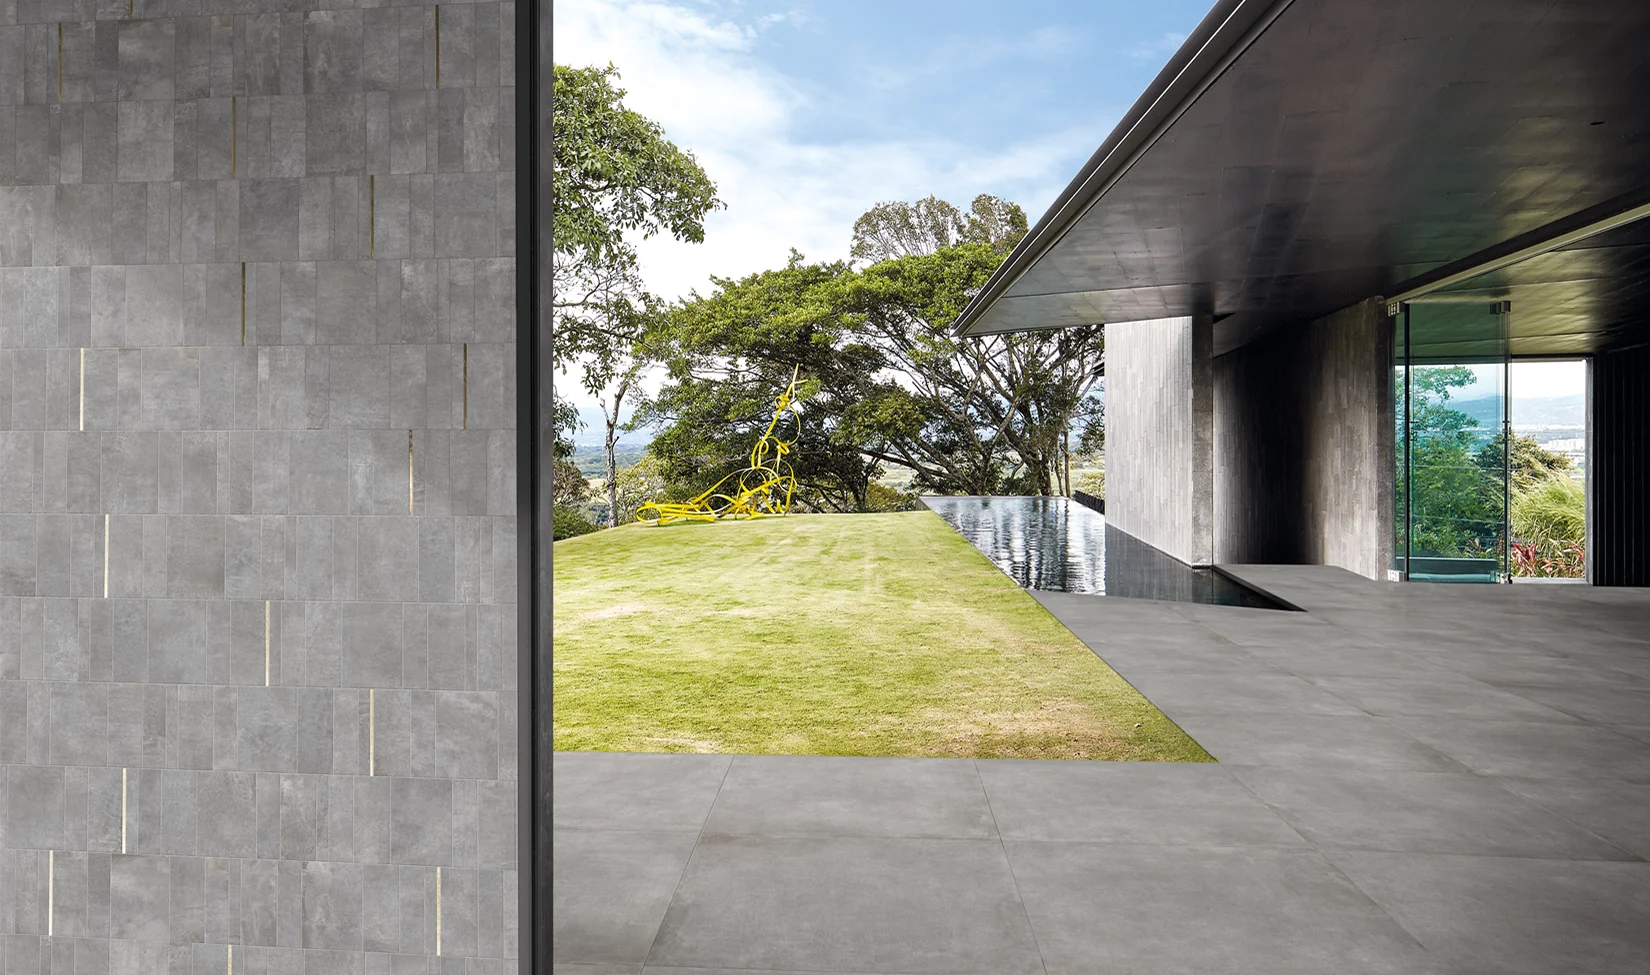 Ambiente moderno con pavimenti in gres porcellanato effetto cemento della collezione Noord colore grigio (Grey), vetrate ampie e continuità visiva verso un giardino esterno curato.